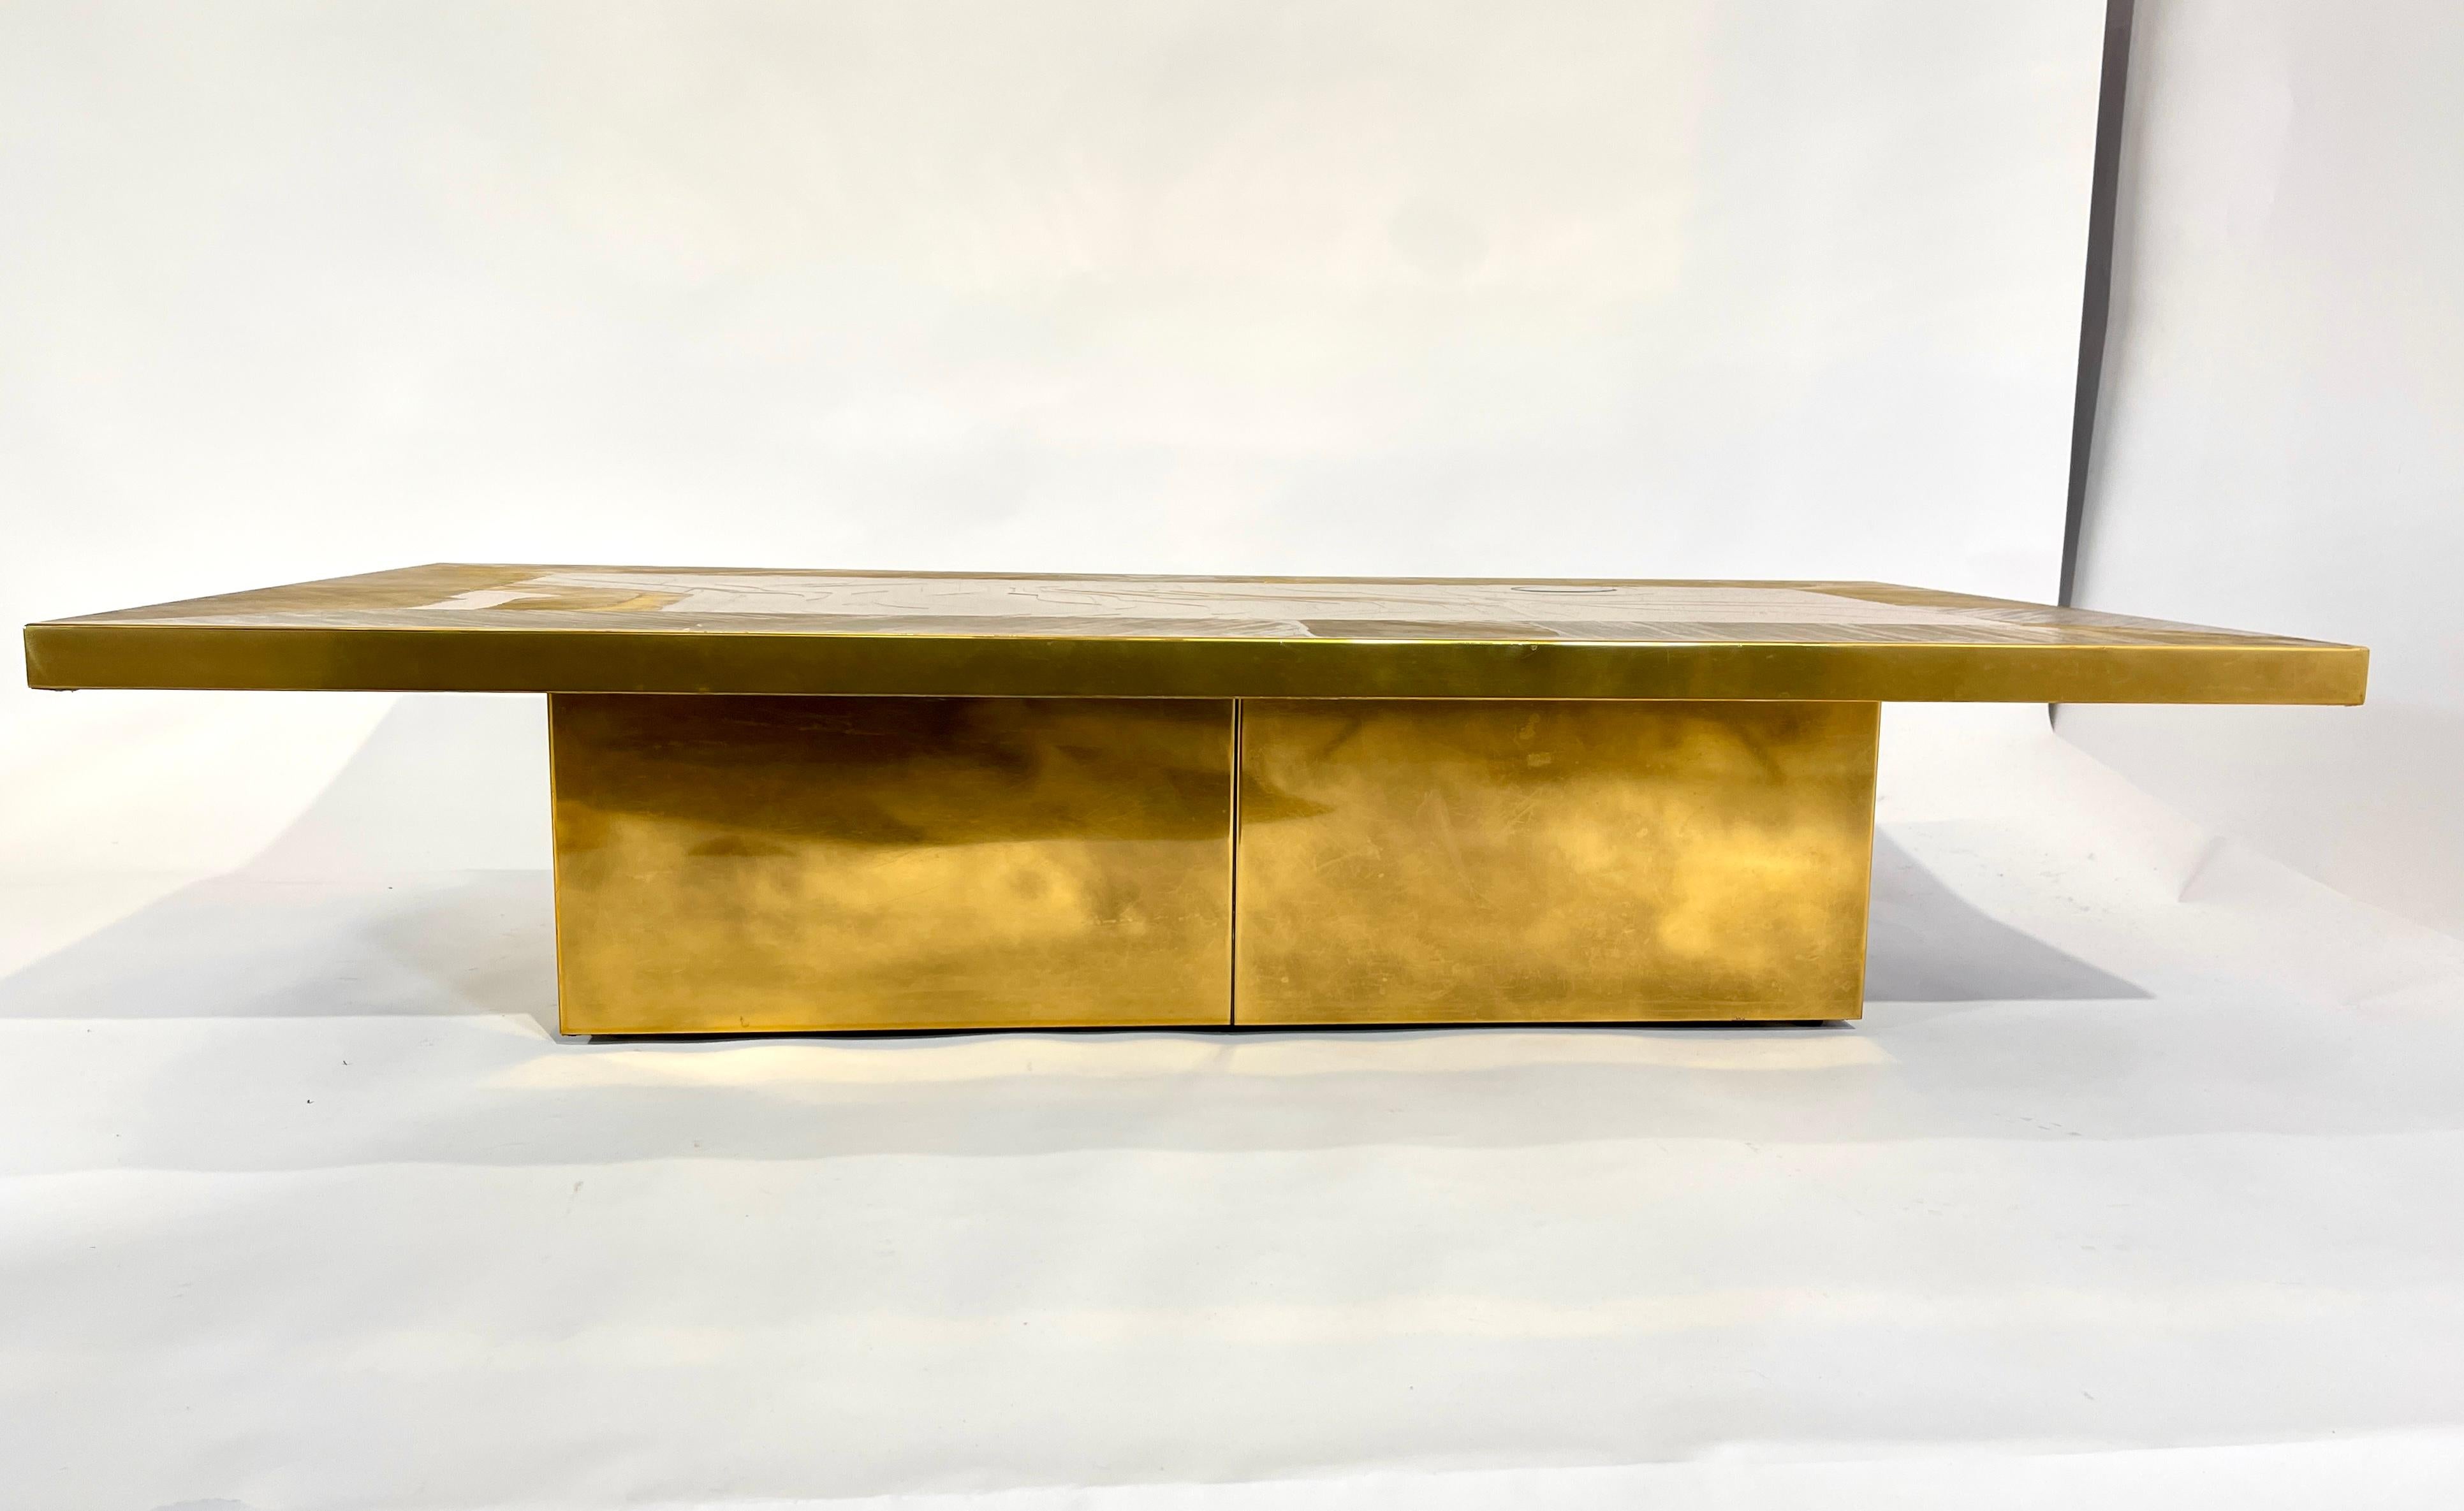 Table basse en laiton gravé conçue par Nadie Jenatzy en 1970, avec 1 plateau en pierre d'agate. Ce meuble a été rafraîchi, le vernis et le polissage ont été refaits.
Signé par l'artiste.
Nadie Jenatzi (1943-2004) est l'épouse d'Armand Jonckers et la